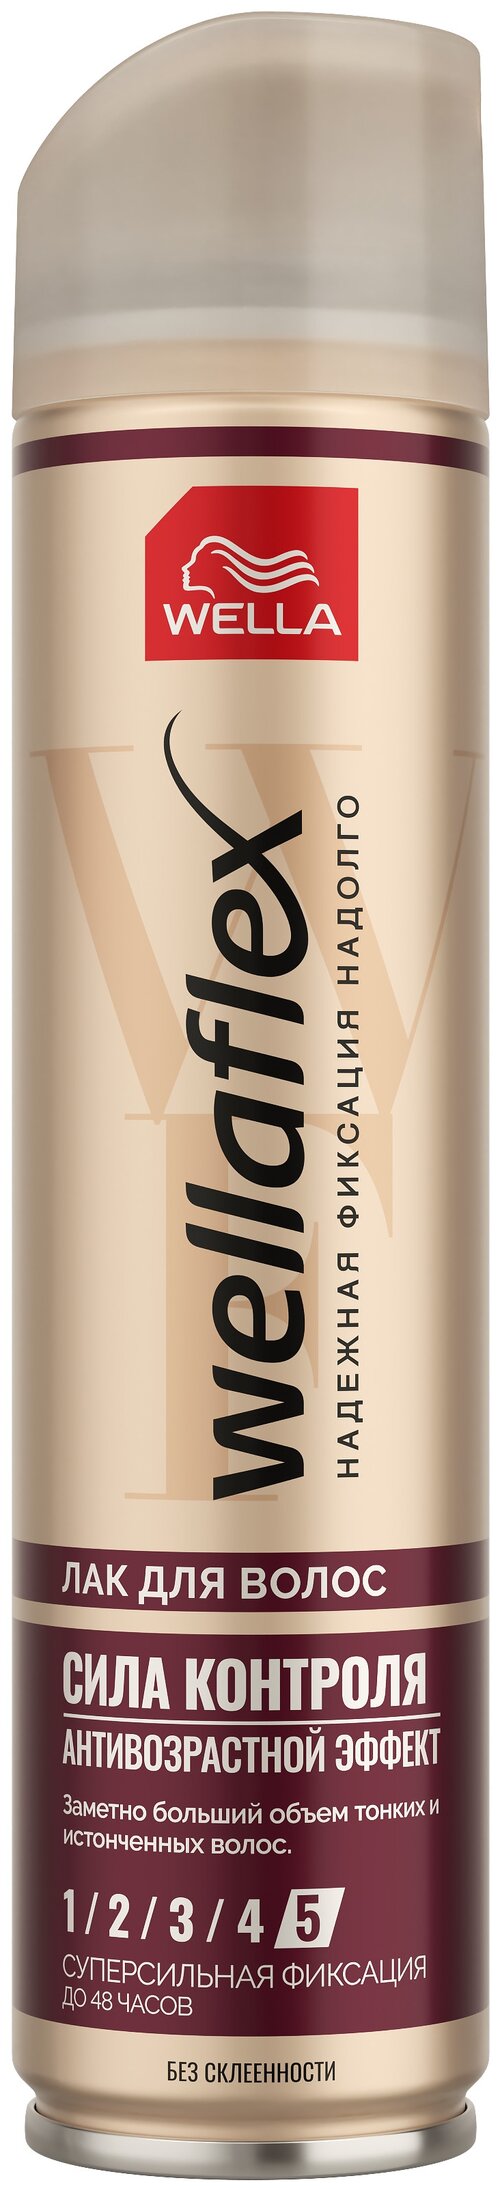 Wella Лак для волос Wellaflex С антивозрастным эффектом, экстрасильная фиксация, 250 мл